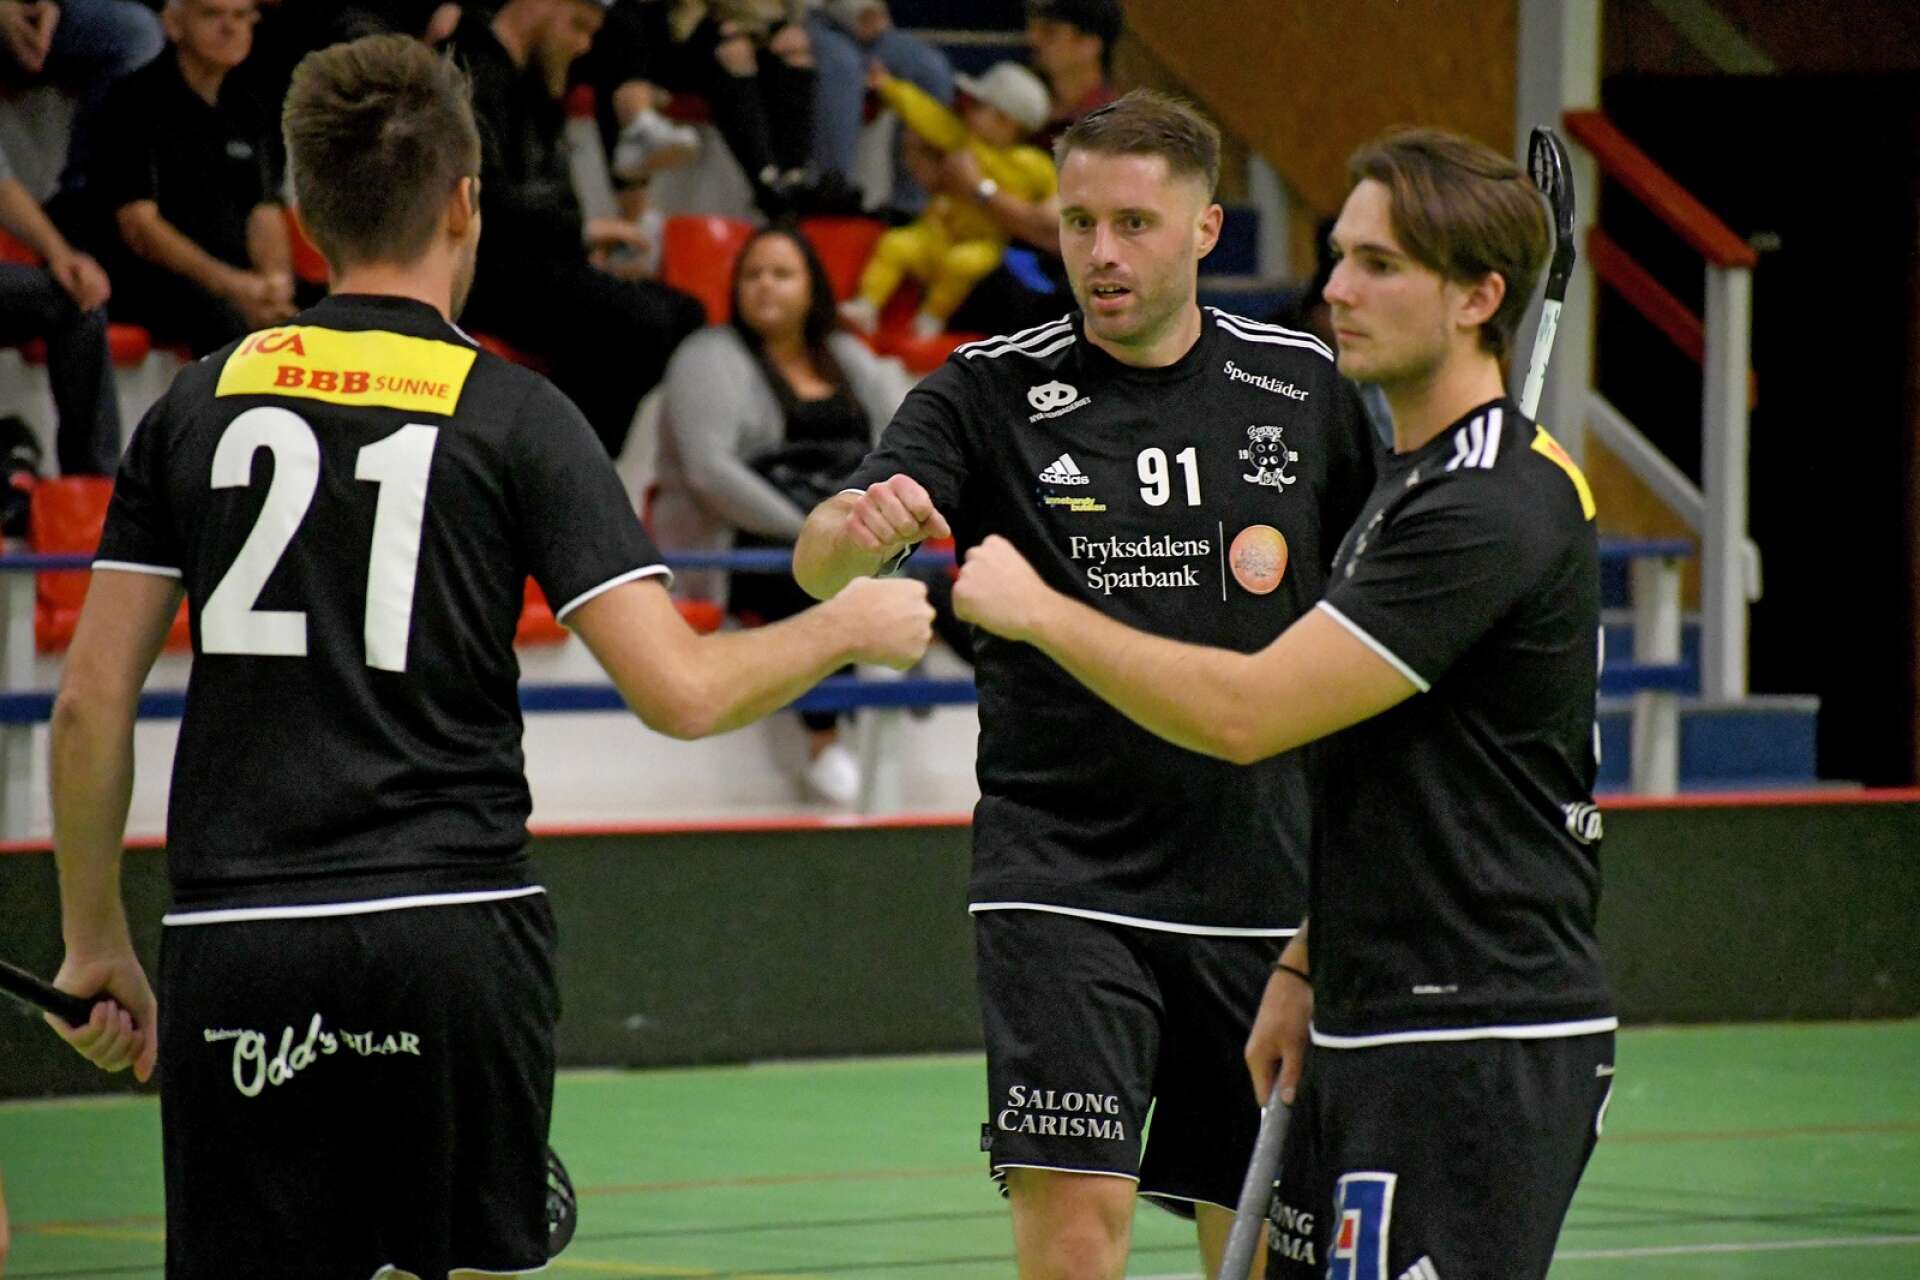 Tre viktiga poäng för Sunne IBK. På bilden syns tre av fyra målskyttar, Peter Eriksson (21), Andreas Svanberg (91) och Marcus Schultz.